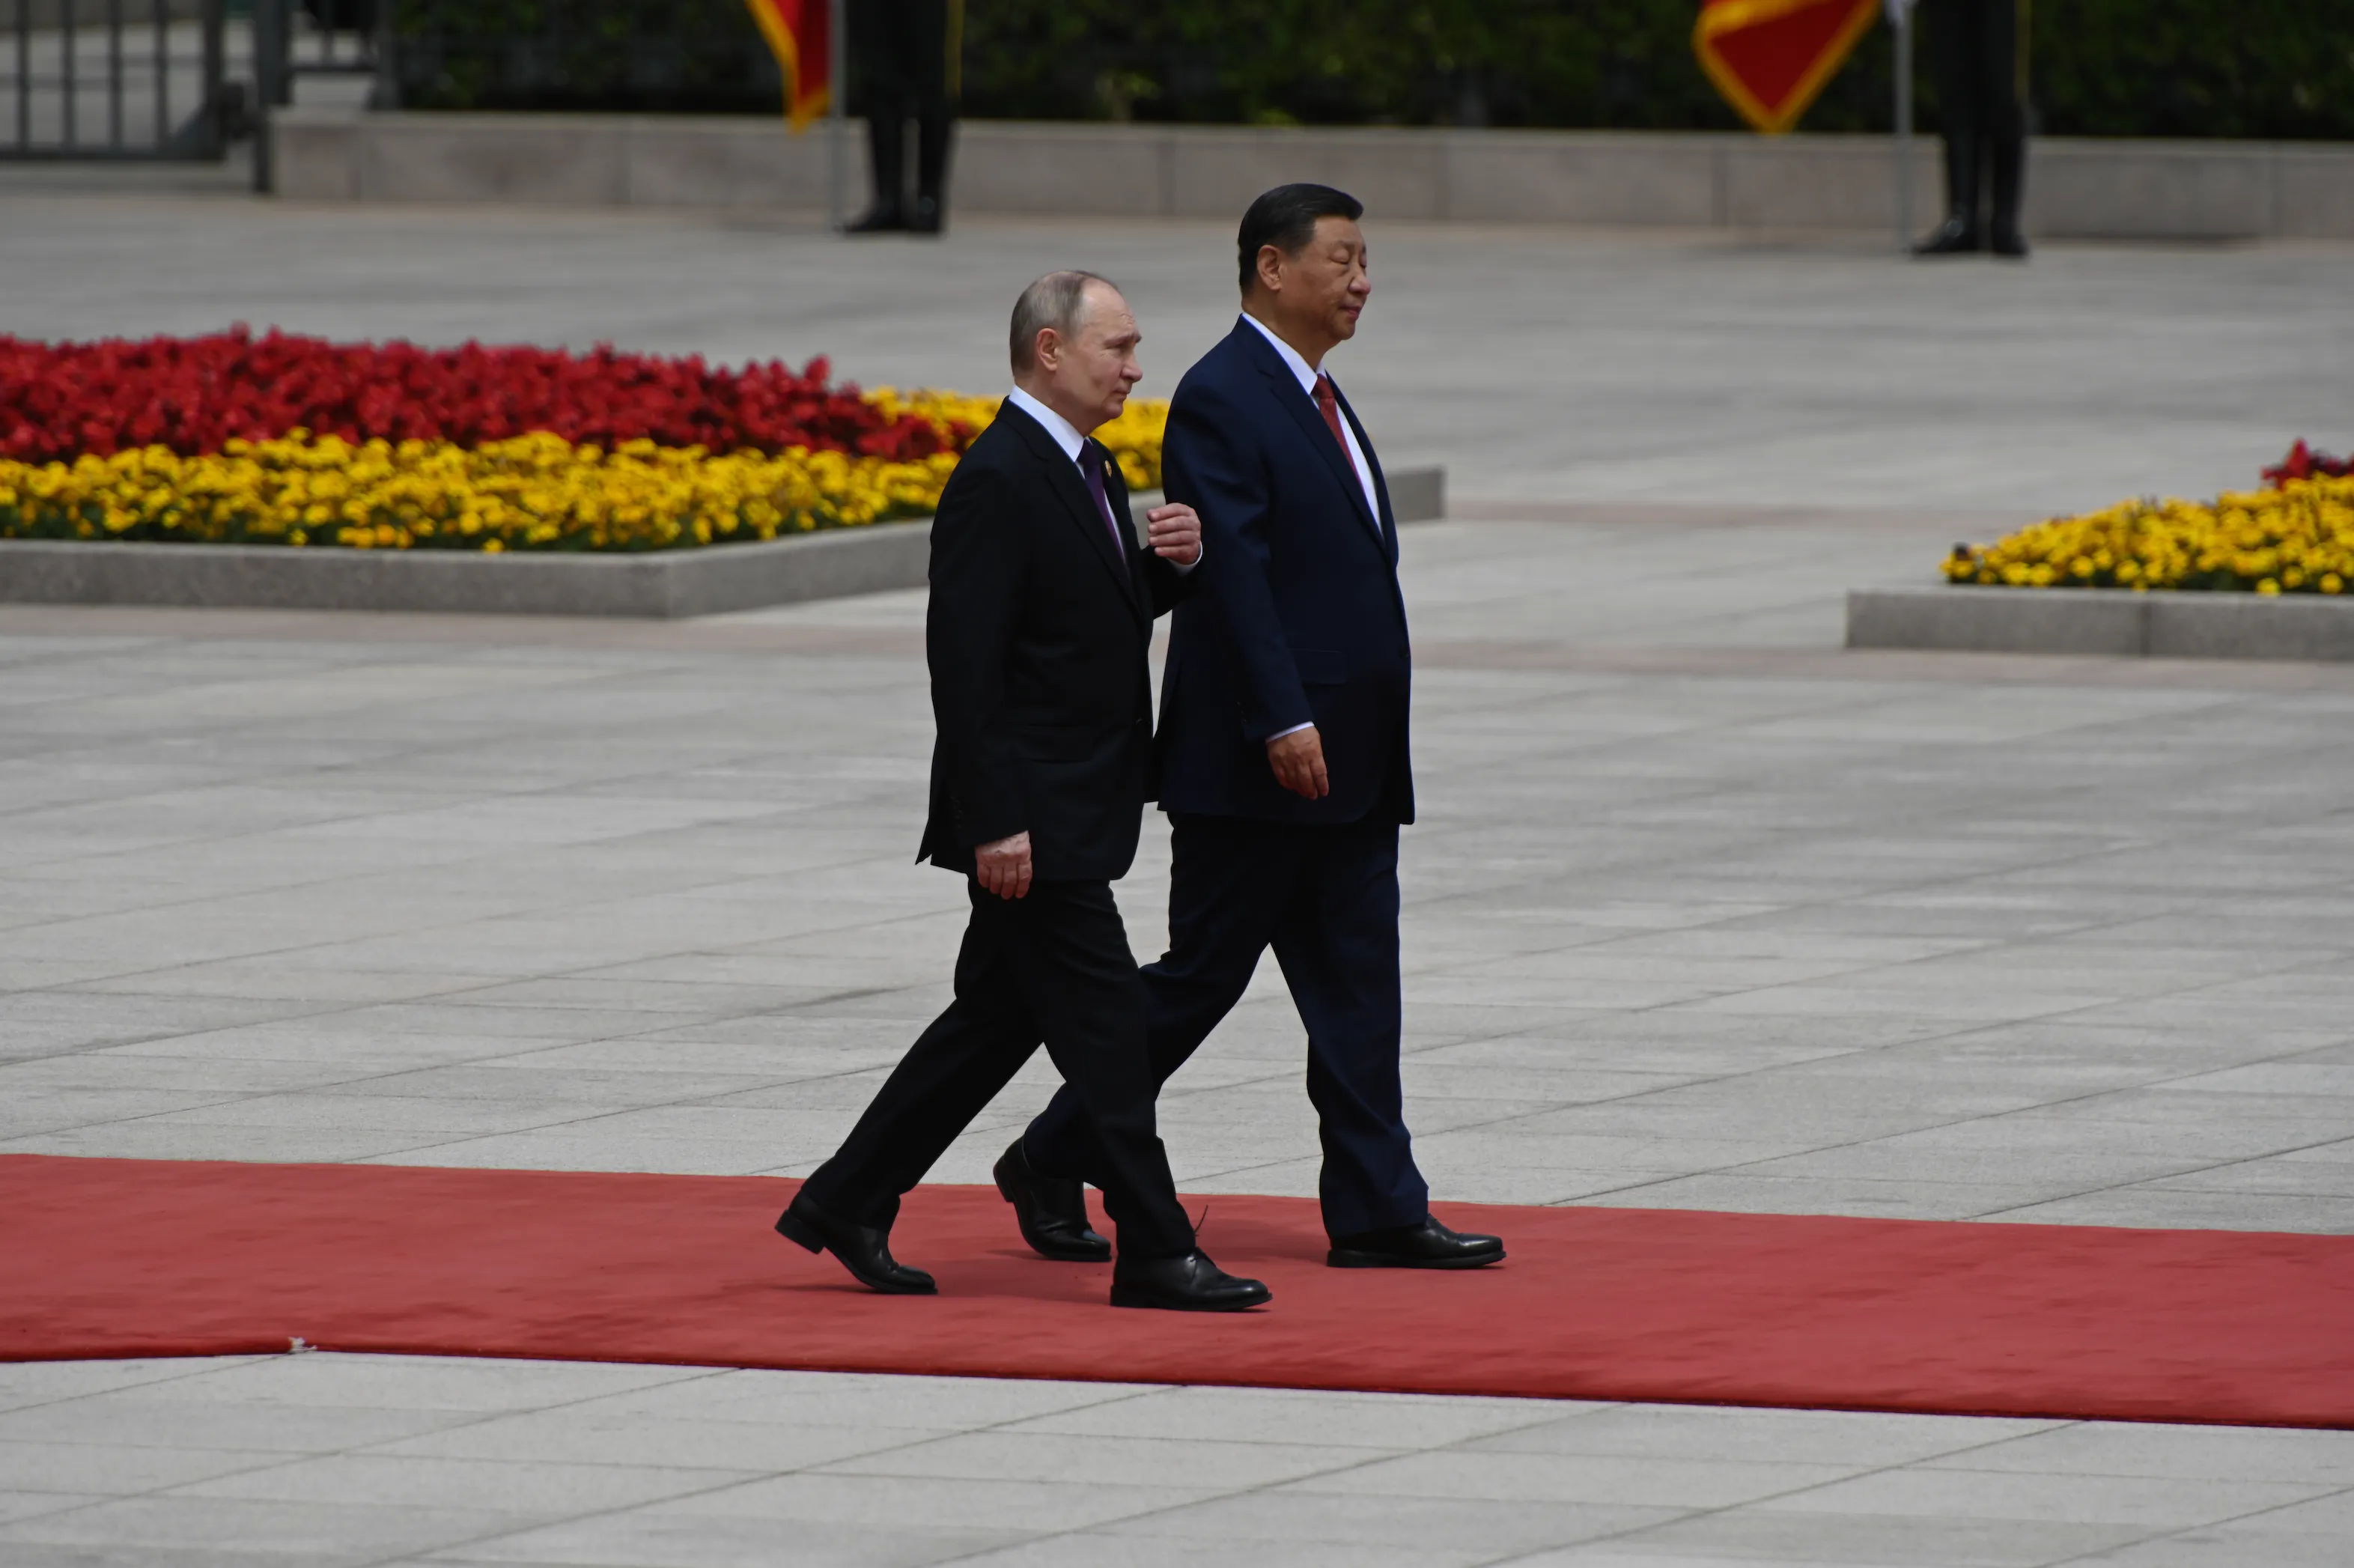 Пушки и Подмосковные вечера: Появилось видео торжественной церемонии в честь прилёта Путина в Пекине